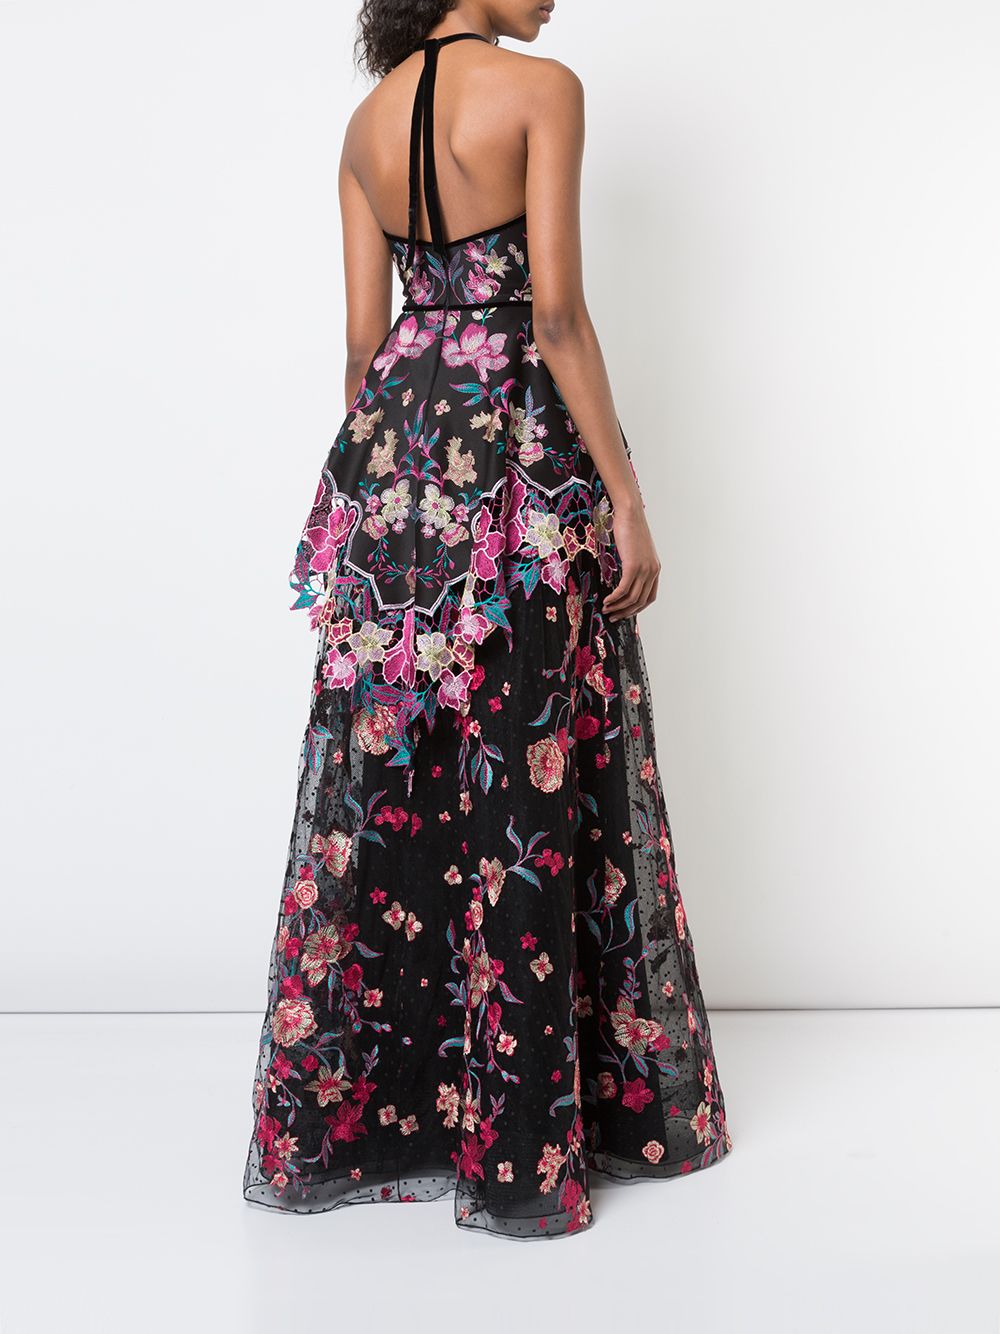 фото Marchesa notte платье из органзы с вышитыми цветами